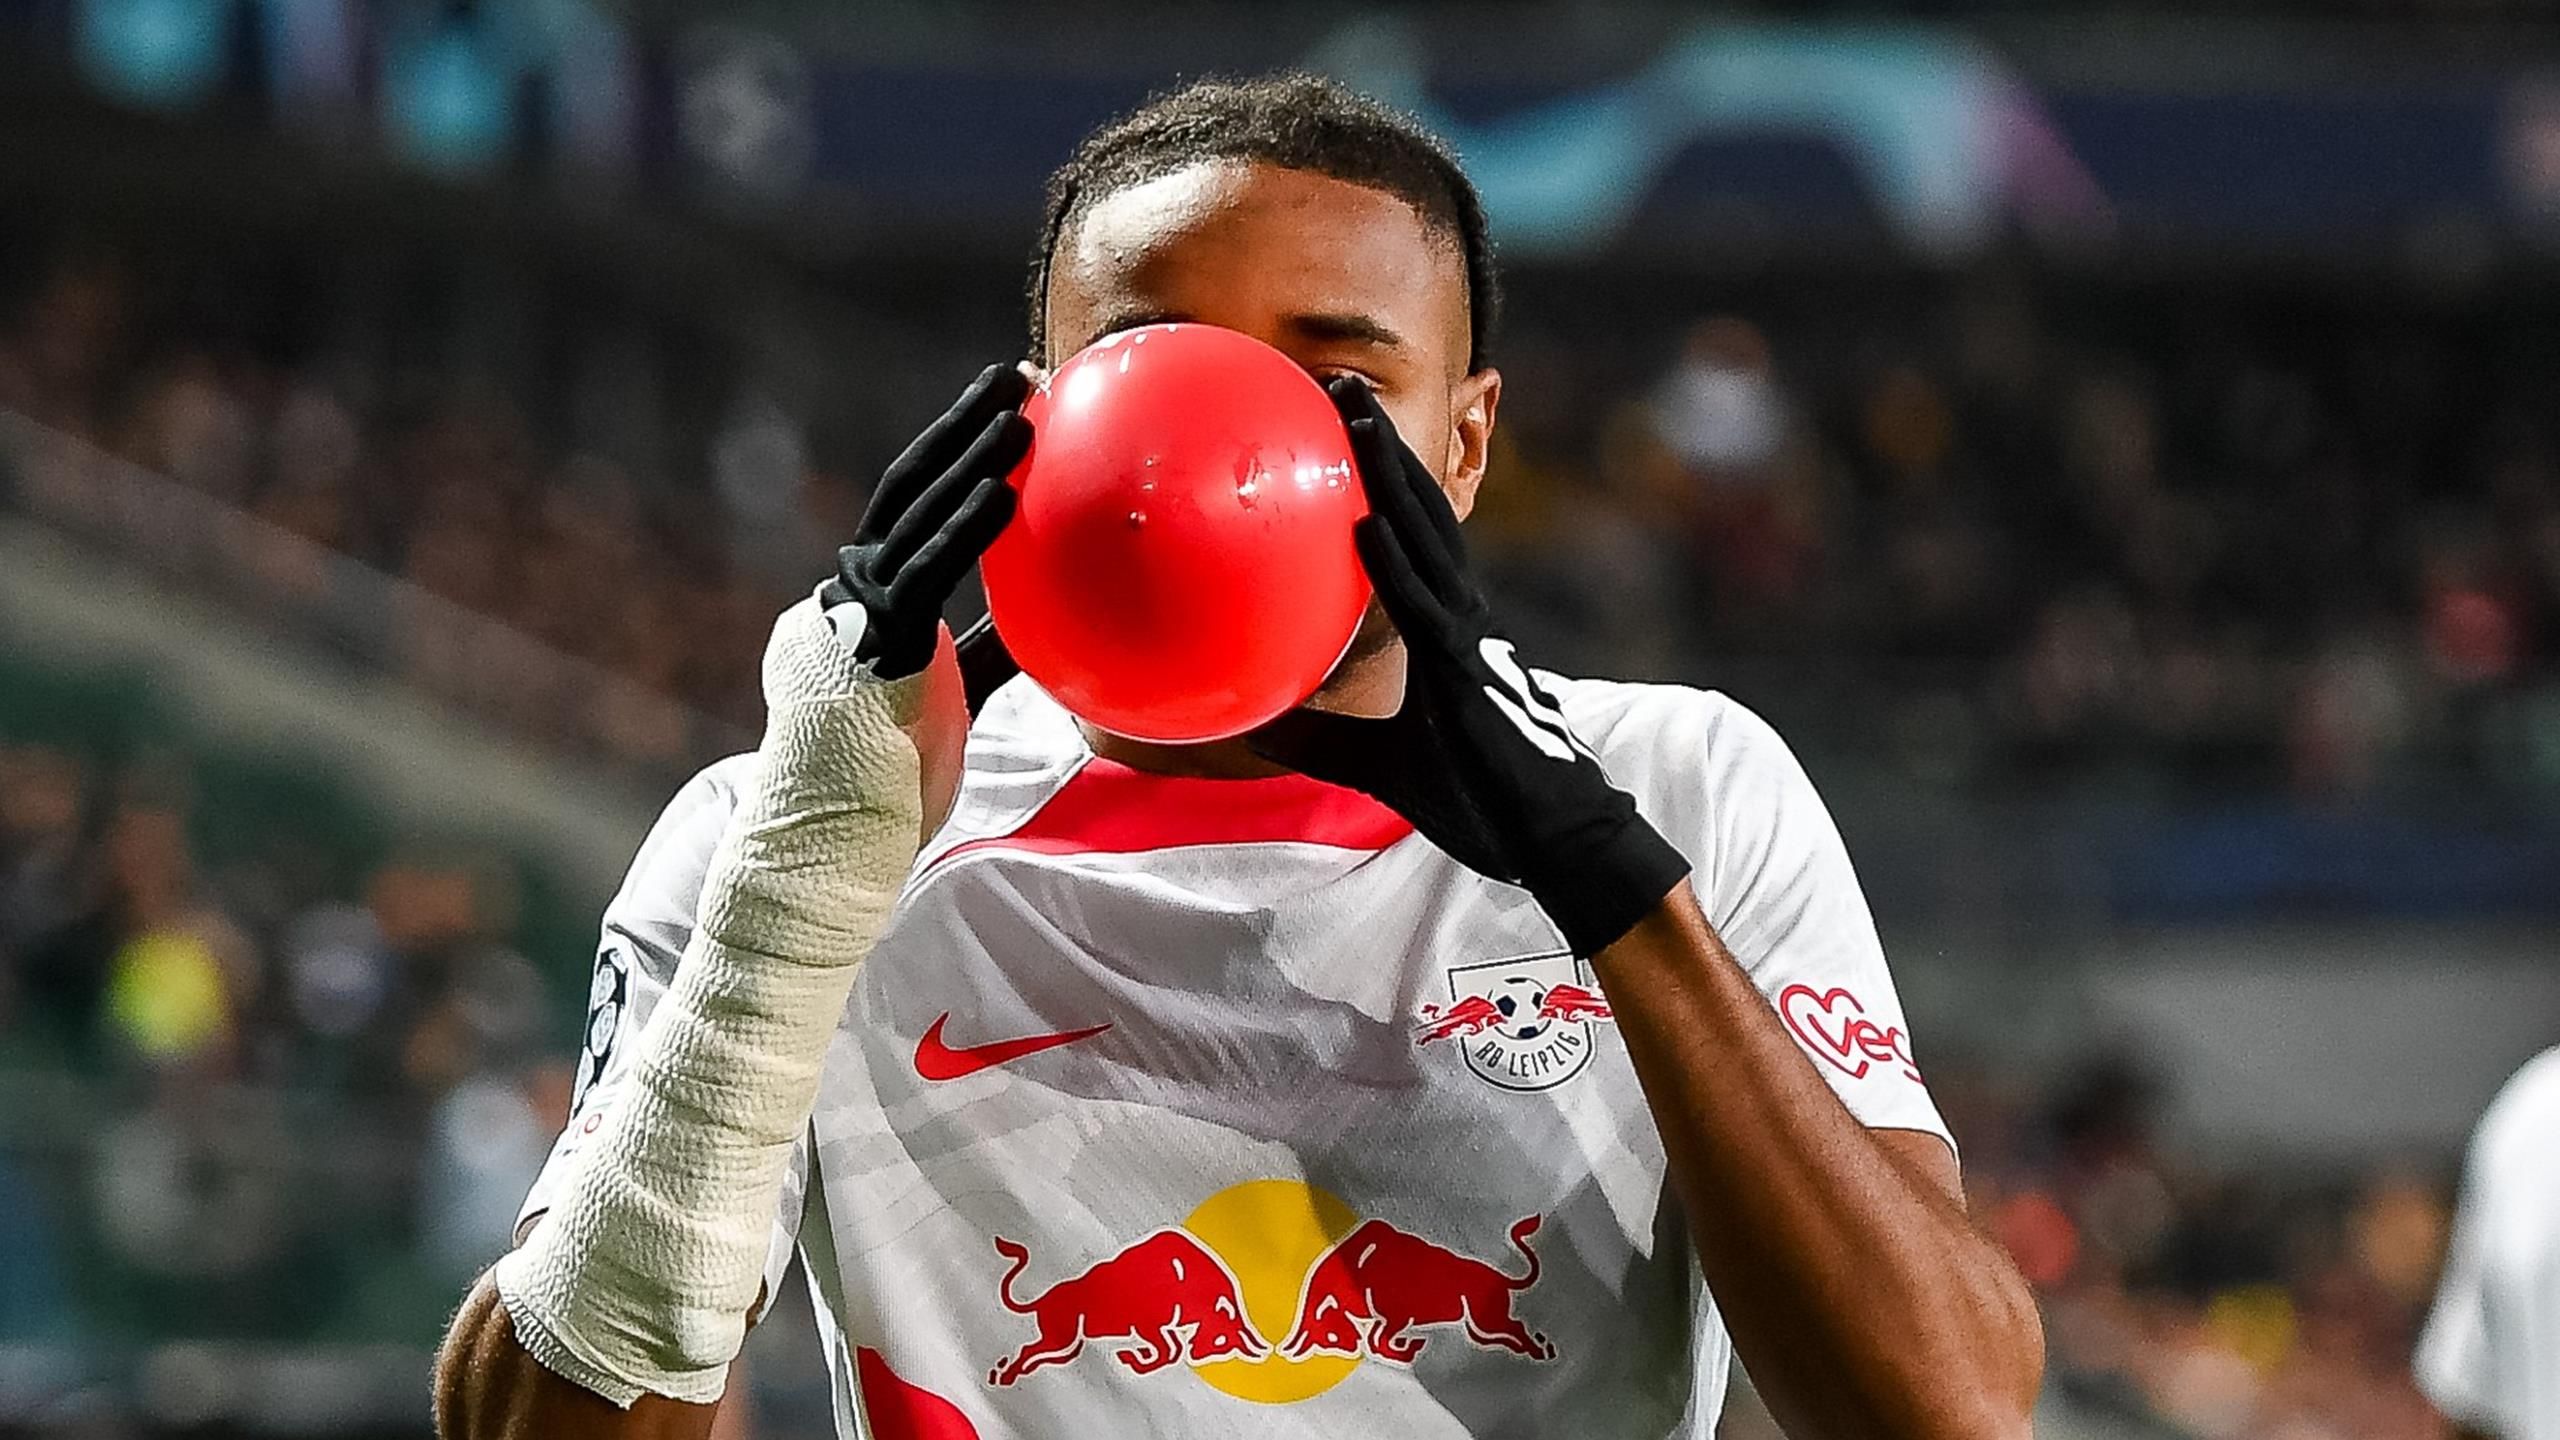 Christopher Nkunku feiert Tor für RB Leipzig mit rotem Luftballon - das steckt dahinter